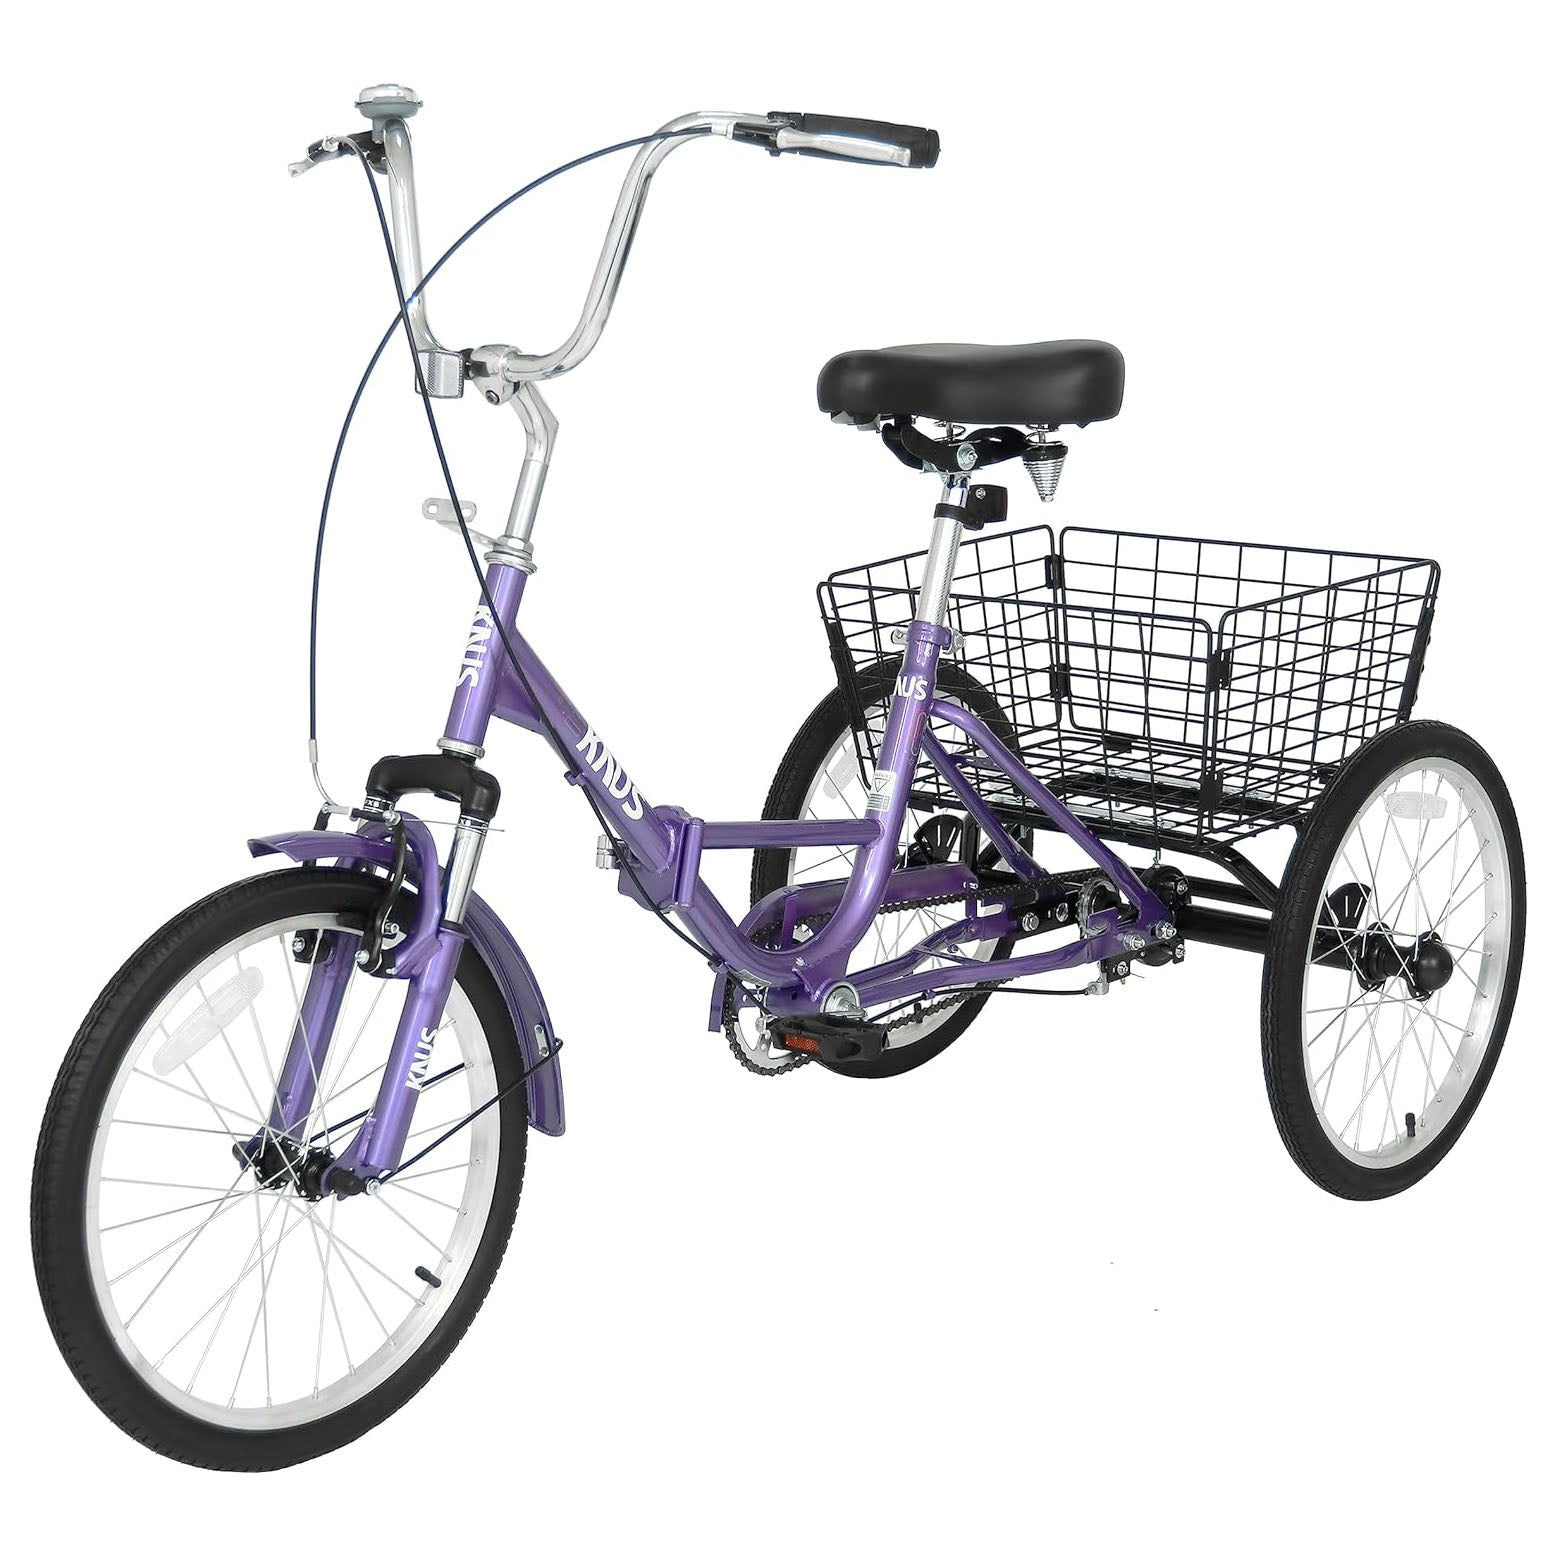 Knus 24" Foldable Single-Speed Tricycle purple